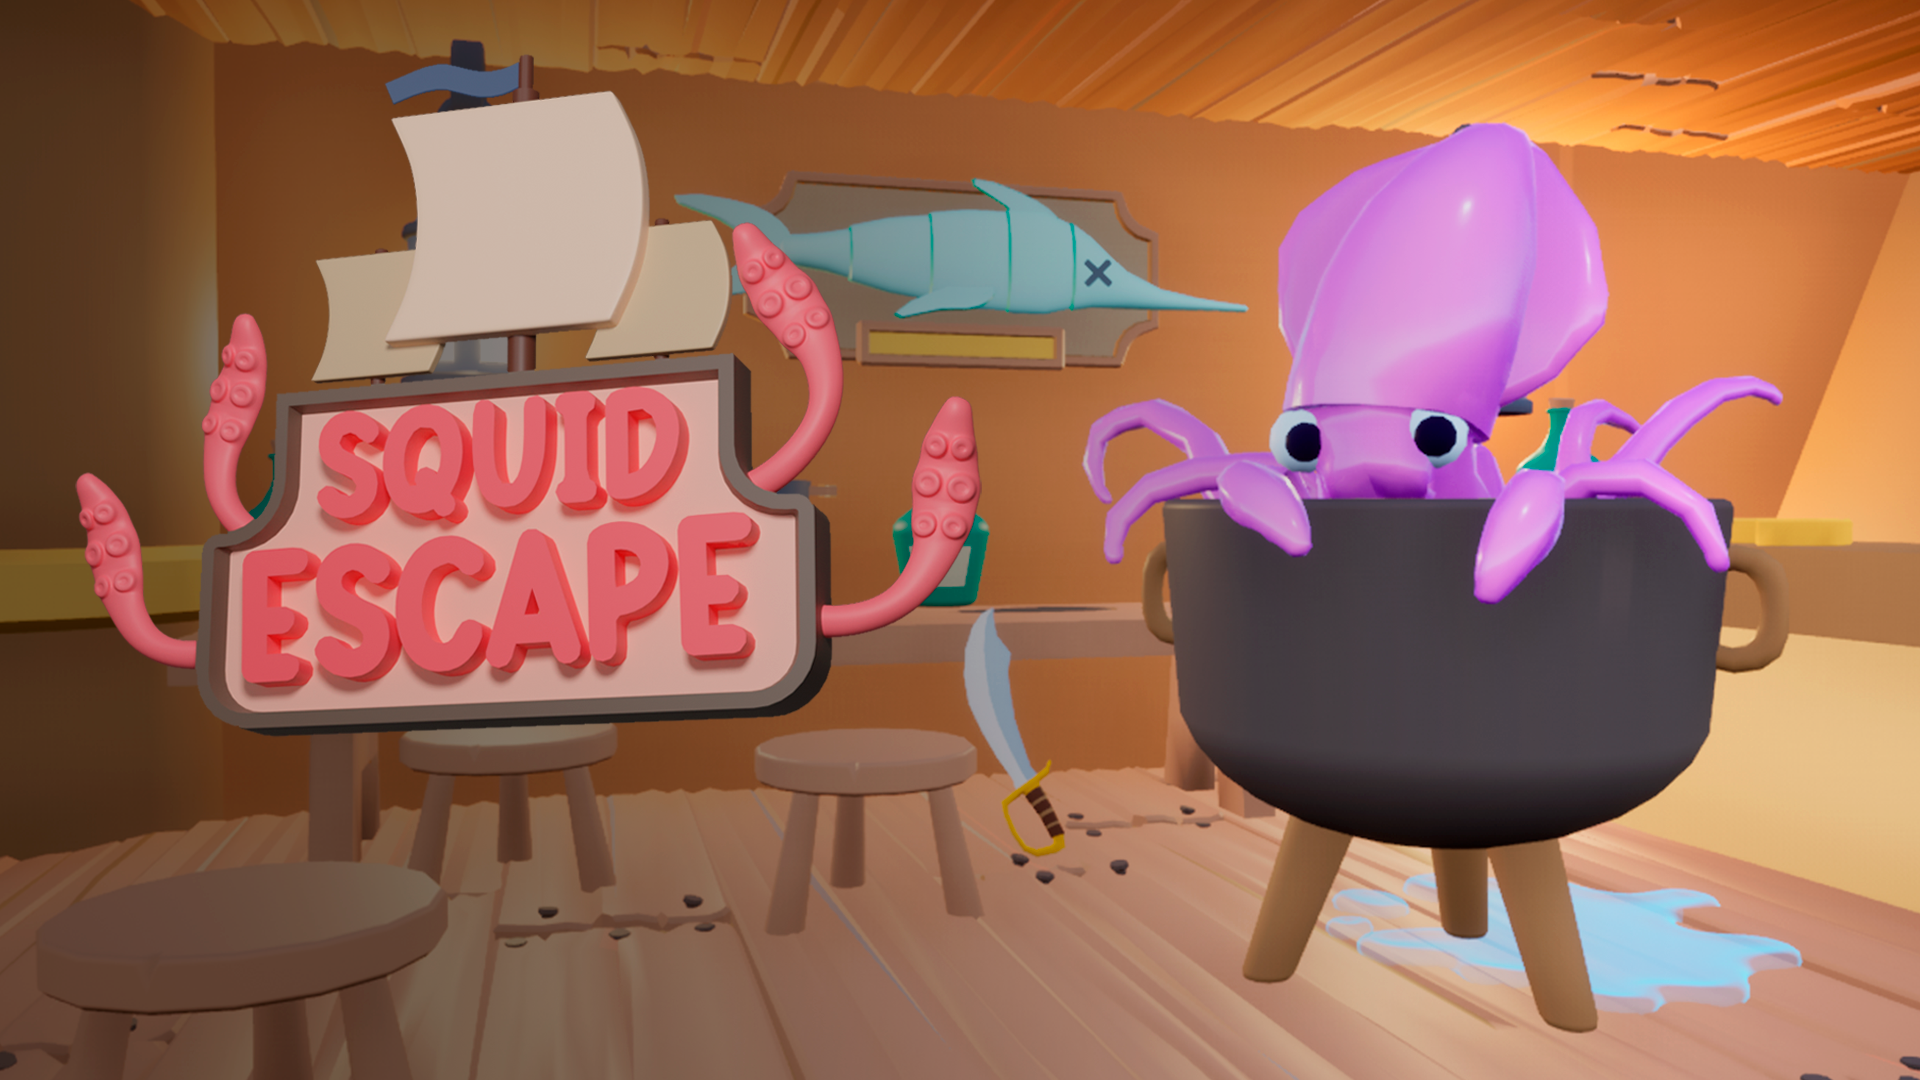 Squid Escape